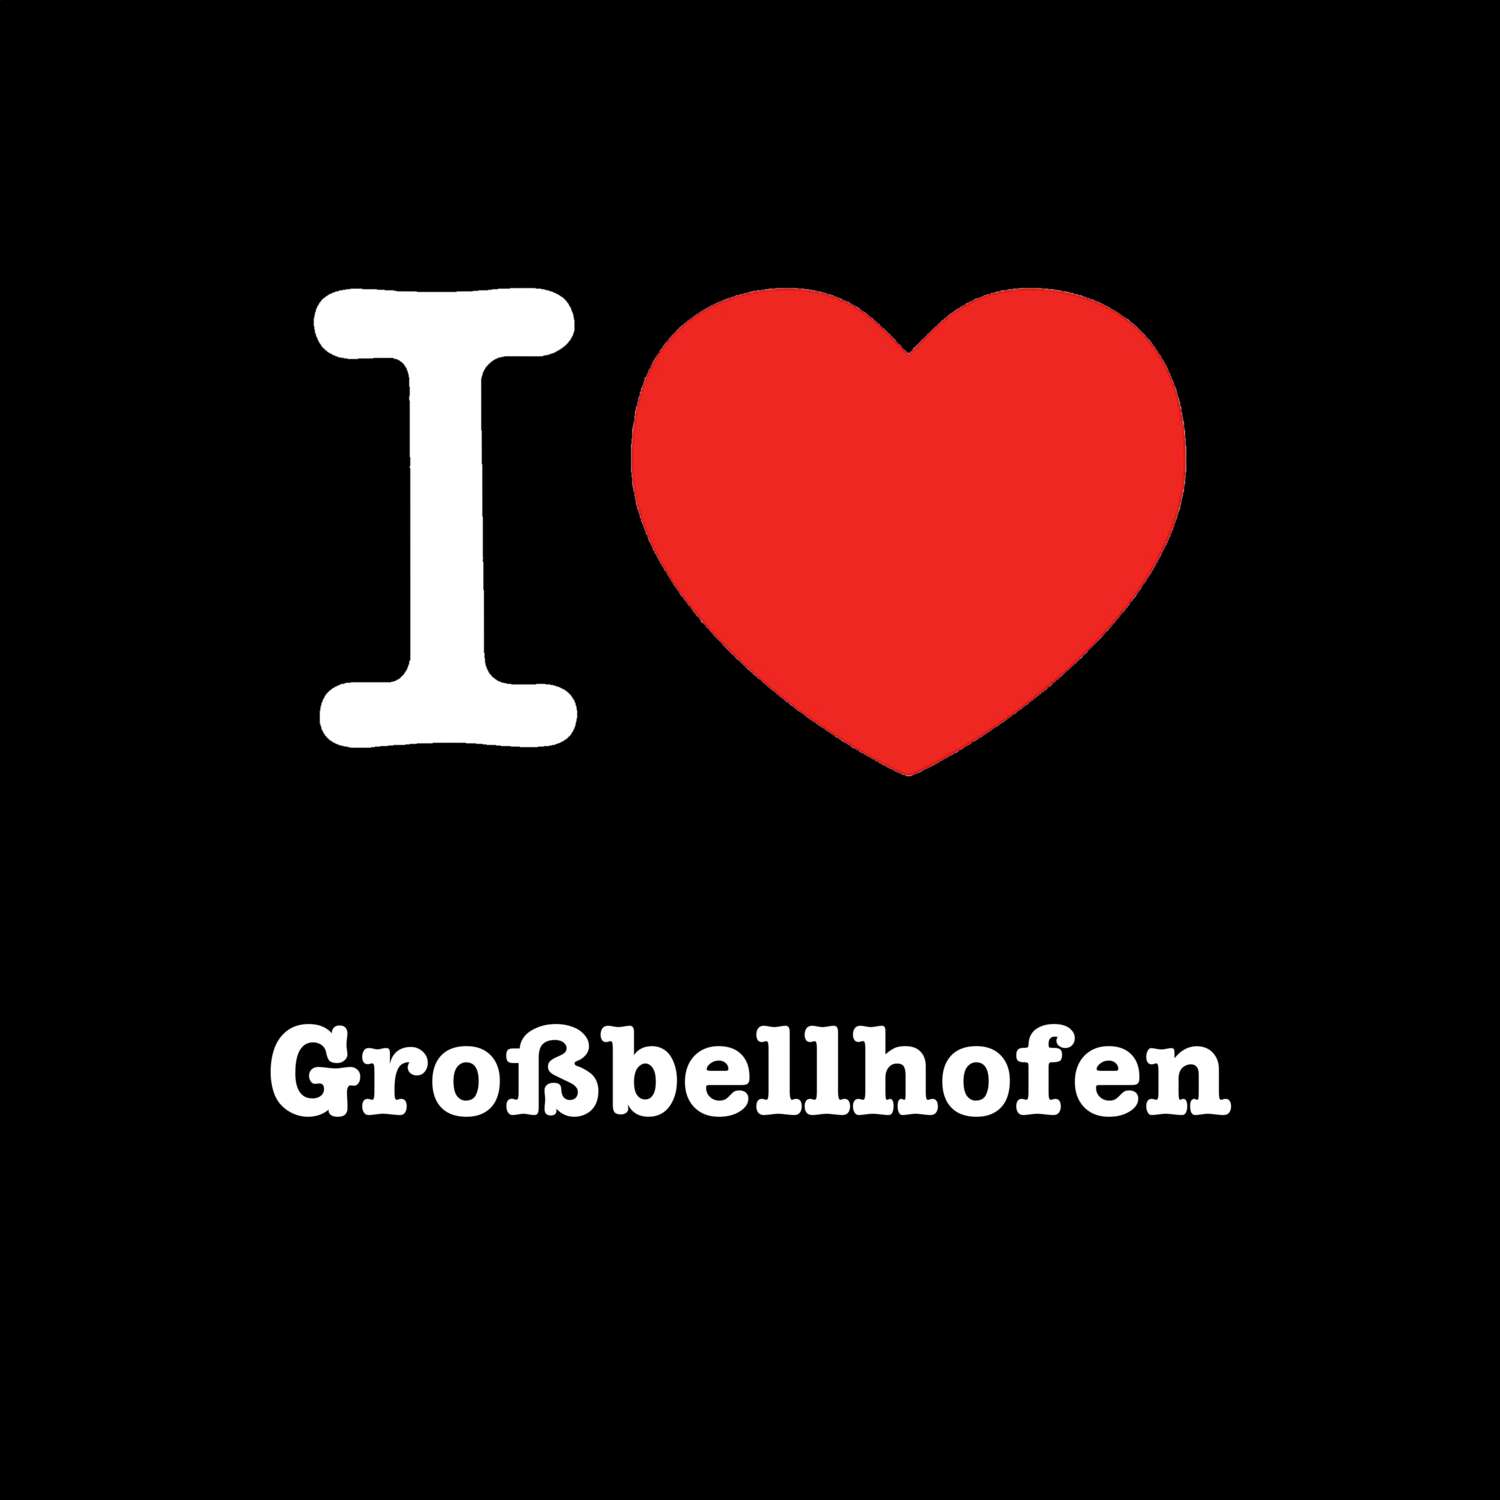 Großbellhofen T-Shirt »I love«